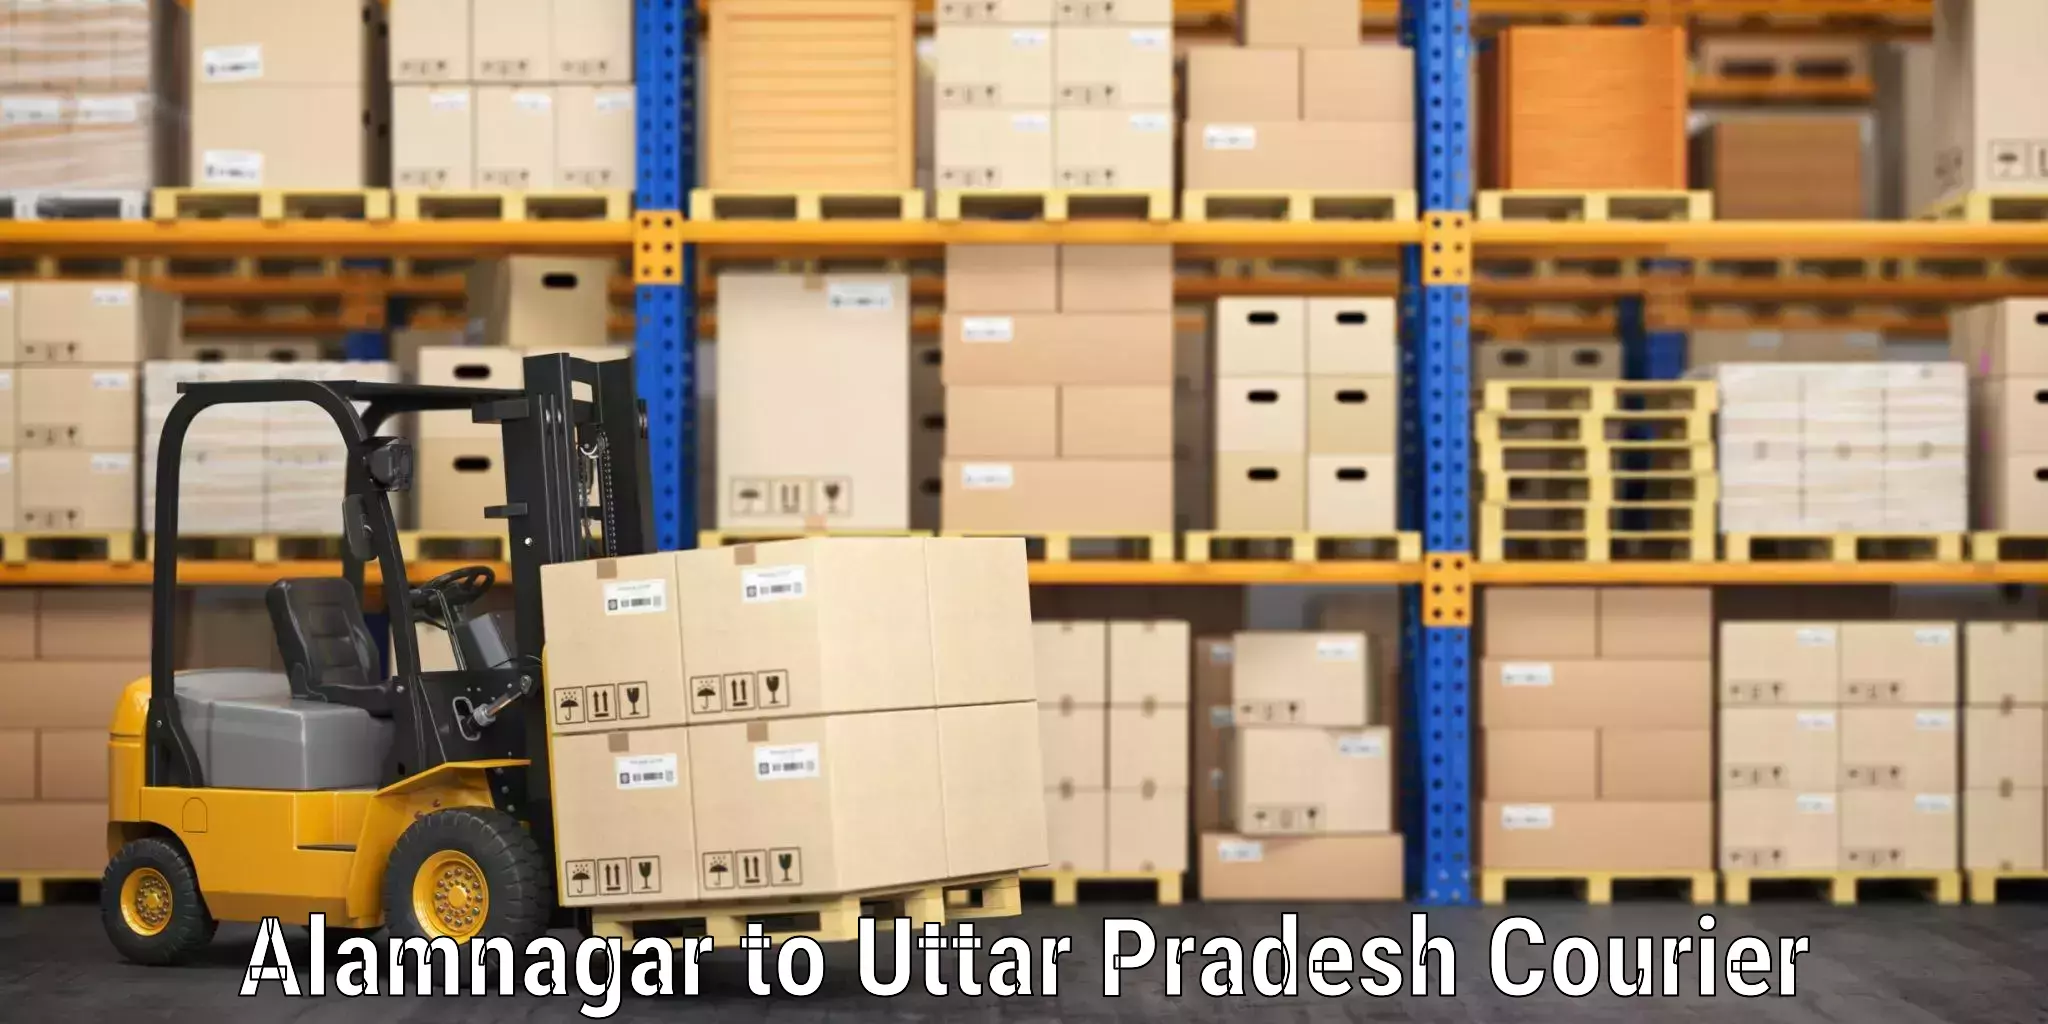 Luggage delivery logistics Alamnagar to Muzaffarnagar